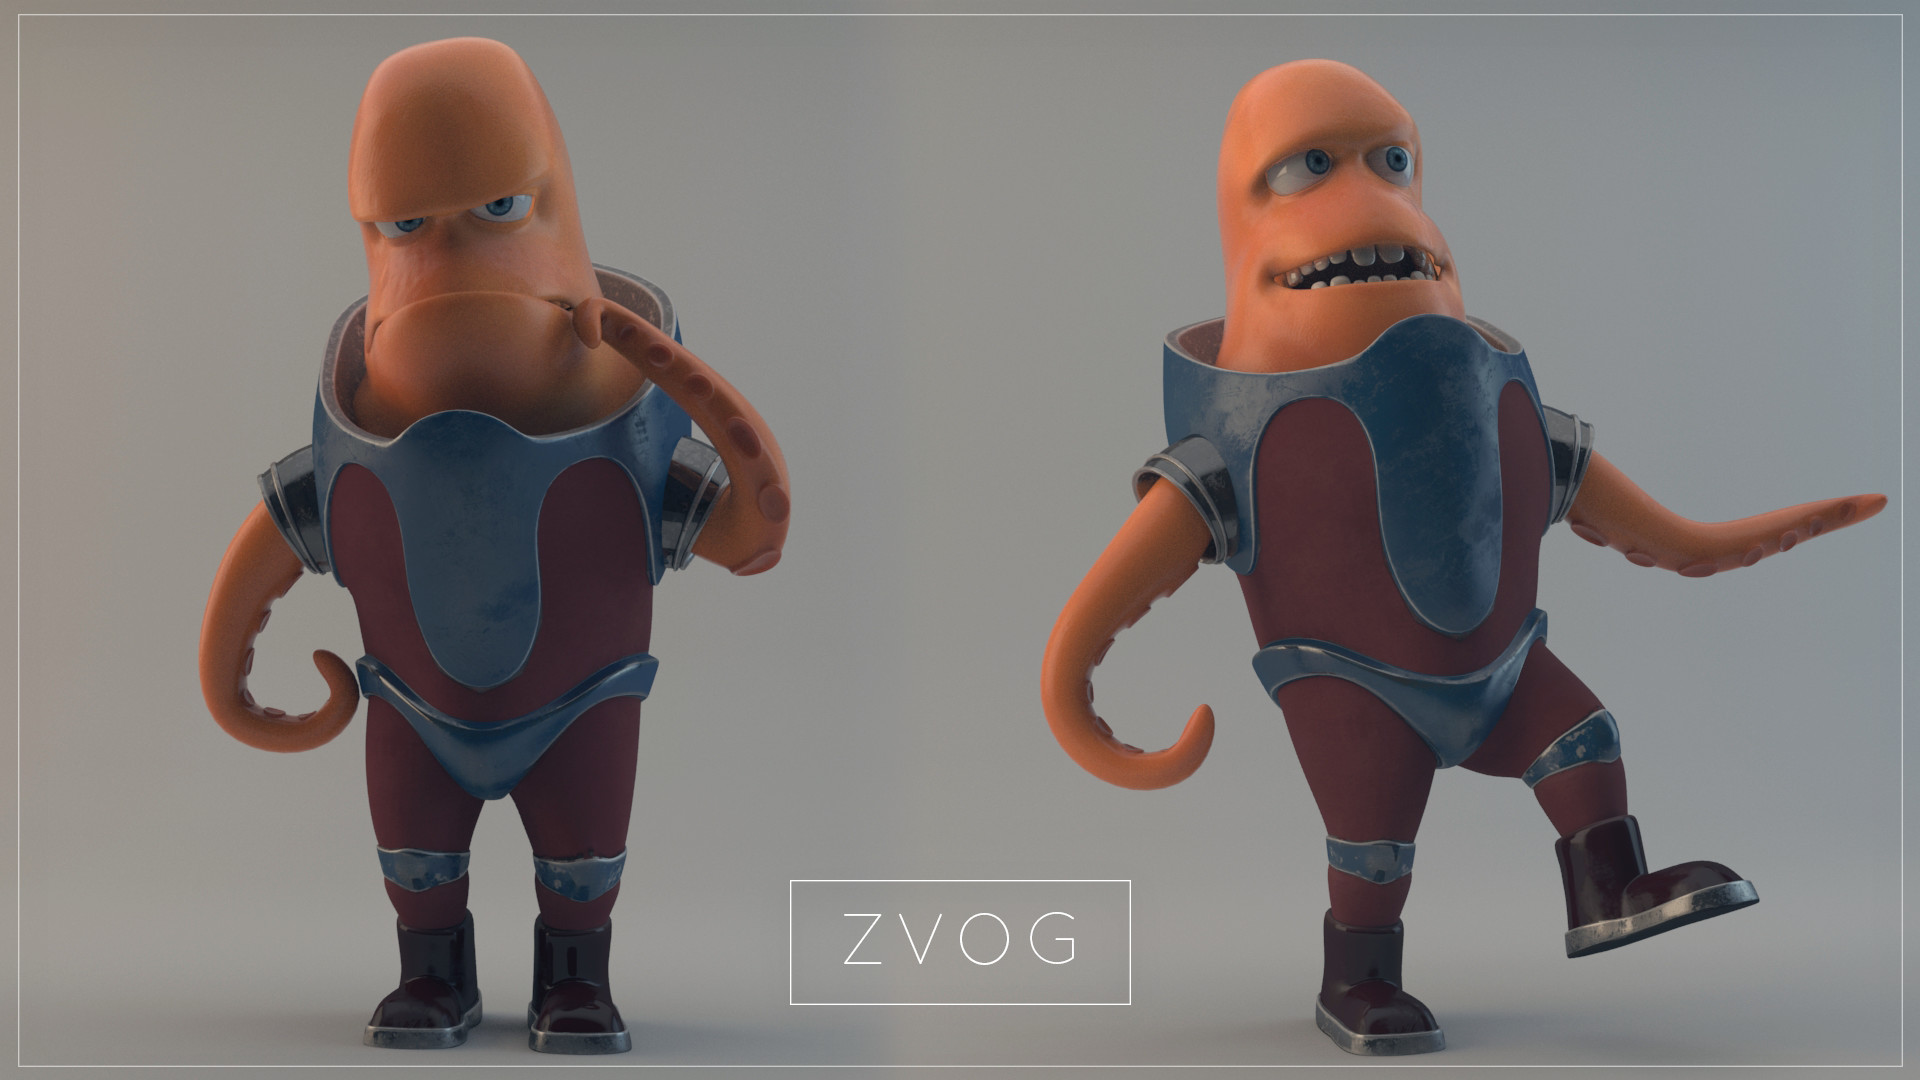 ArtStation - ZVOG - Cartoon Alien Character